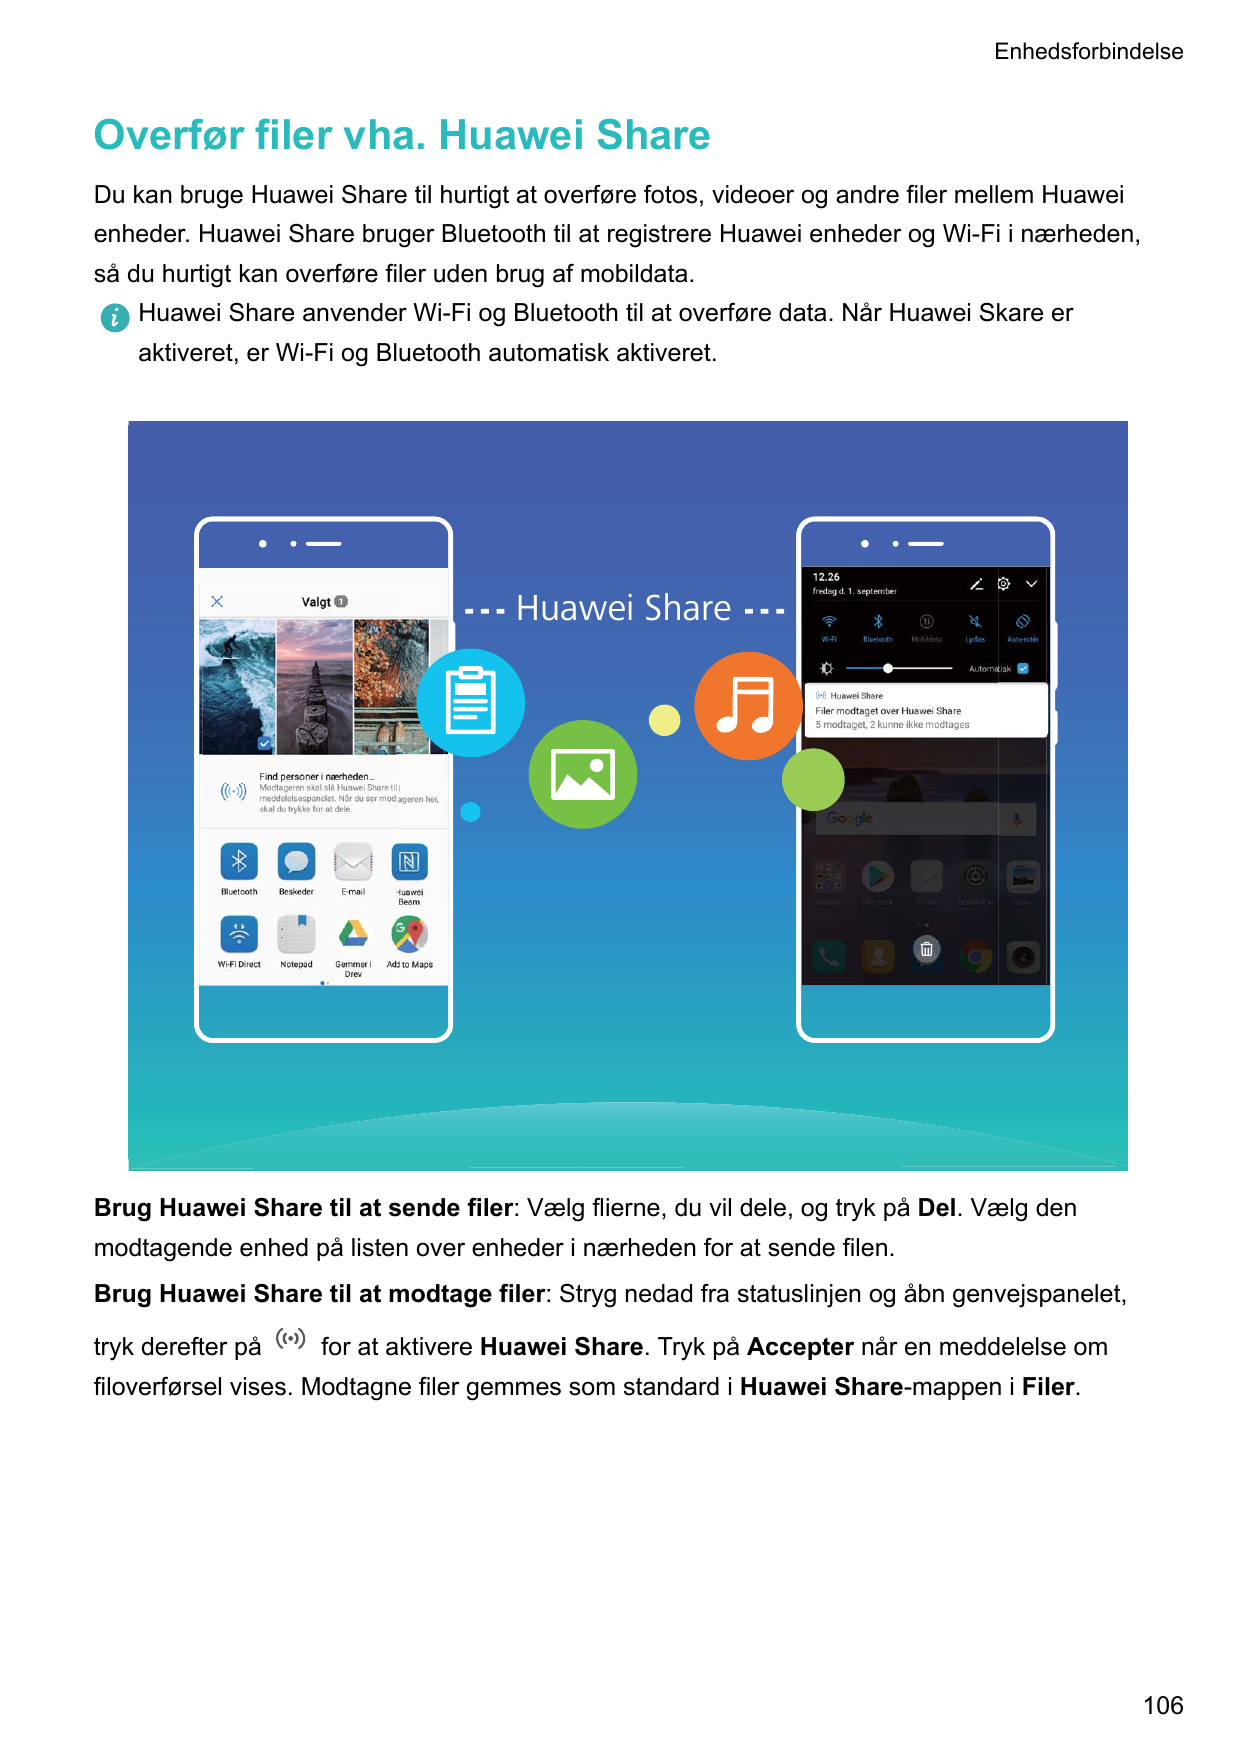 EnhedsforbindelseOverfør filer vha. Huawei ShareDu kan bruge Huawei Share til hurtigt at overføre fotos, videoer og andre filer 